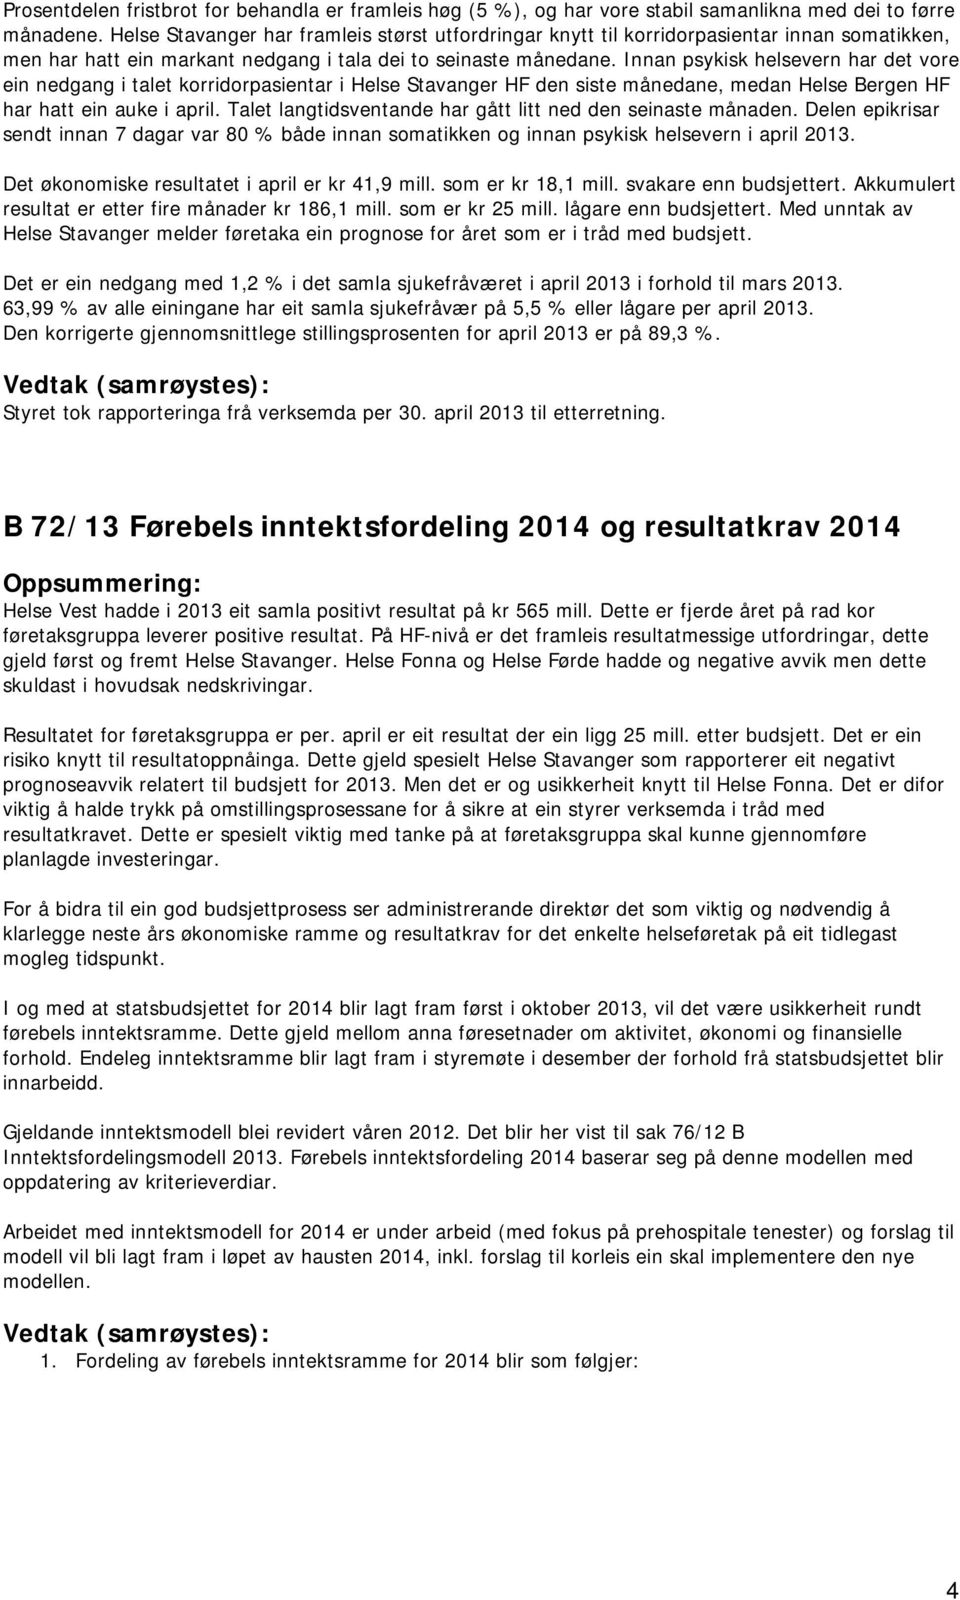 Innan psykisk helsevern har det vore ein nedgang i talet korridorpasientar i Helse Stavanger HF den siste månedane, medan Helse Bergen HF har hatt ein auke i april.